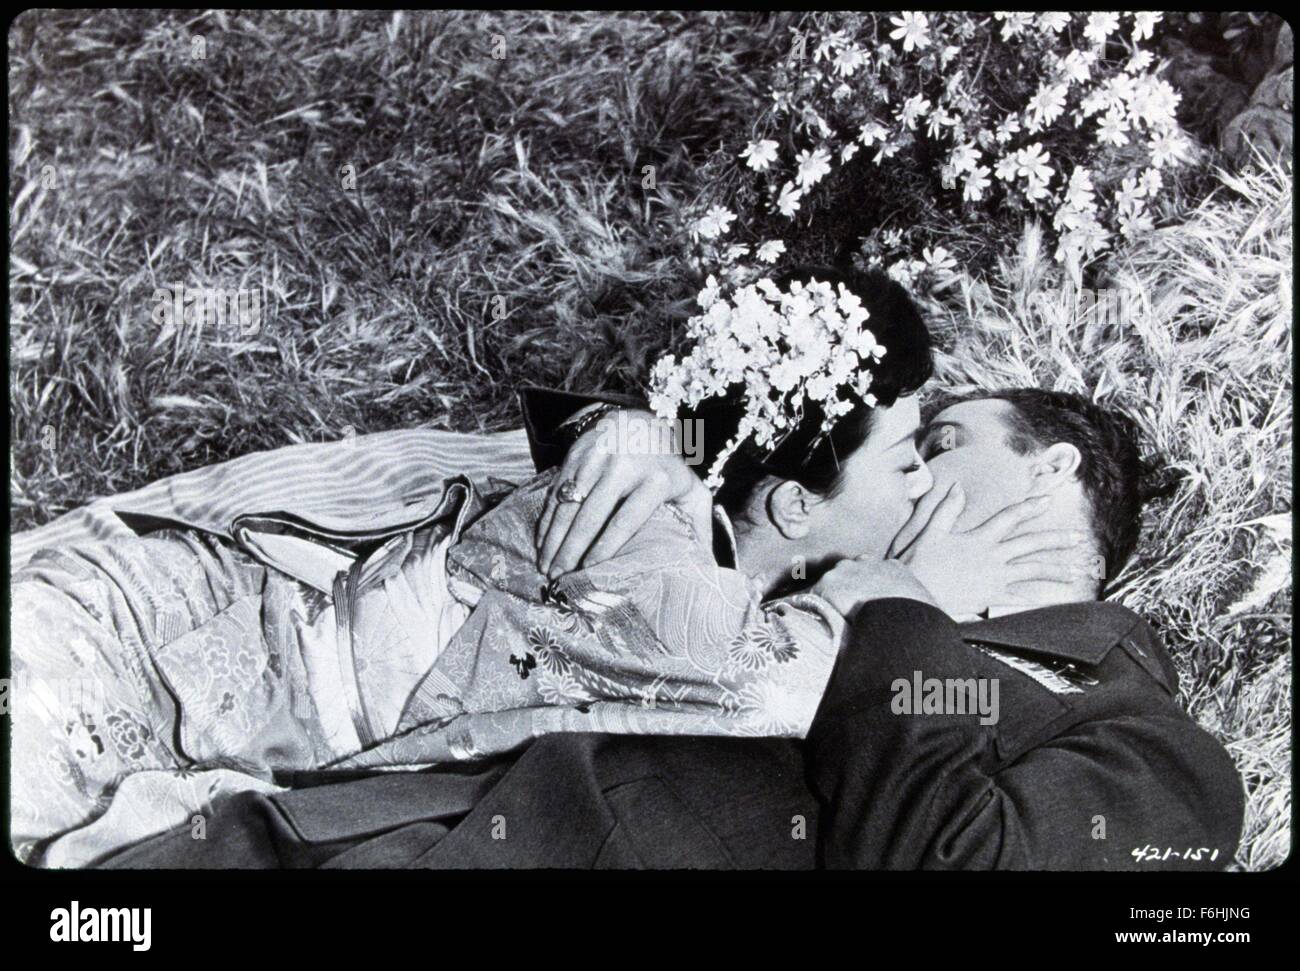 1957, le titre du film : SAYONARA, Directeur : JOSHUA LOGAN, Photo : Marlon Brando, embrasser, embrasser, JOSHUA LOGAN, ROMANCE. (Crédit Image : SNAP) Banque D'Images